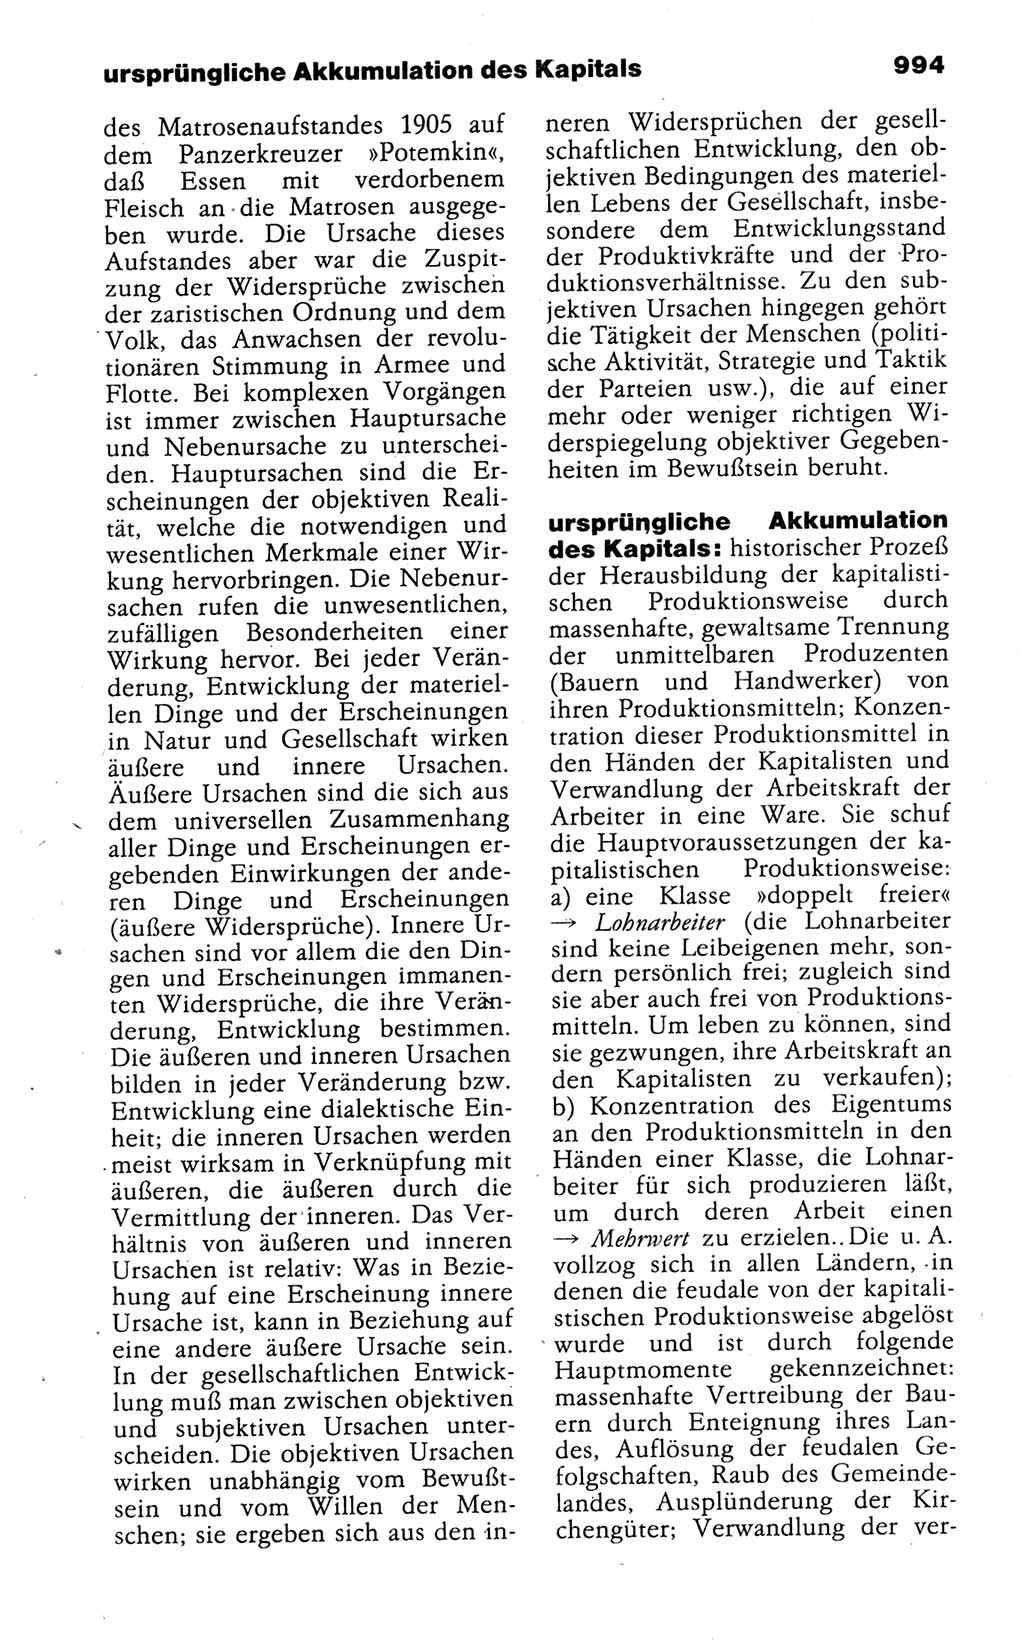 Kleines politisches Wörterbuch [Deutsche Demokratische Republik (DDR)] 1988, Seite 994 (Kl. pol. Wb. DDR 1988, S. 994)